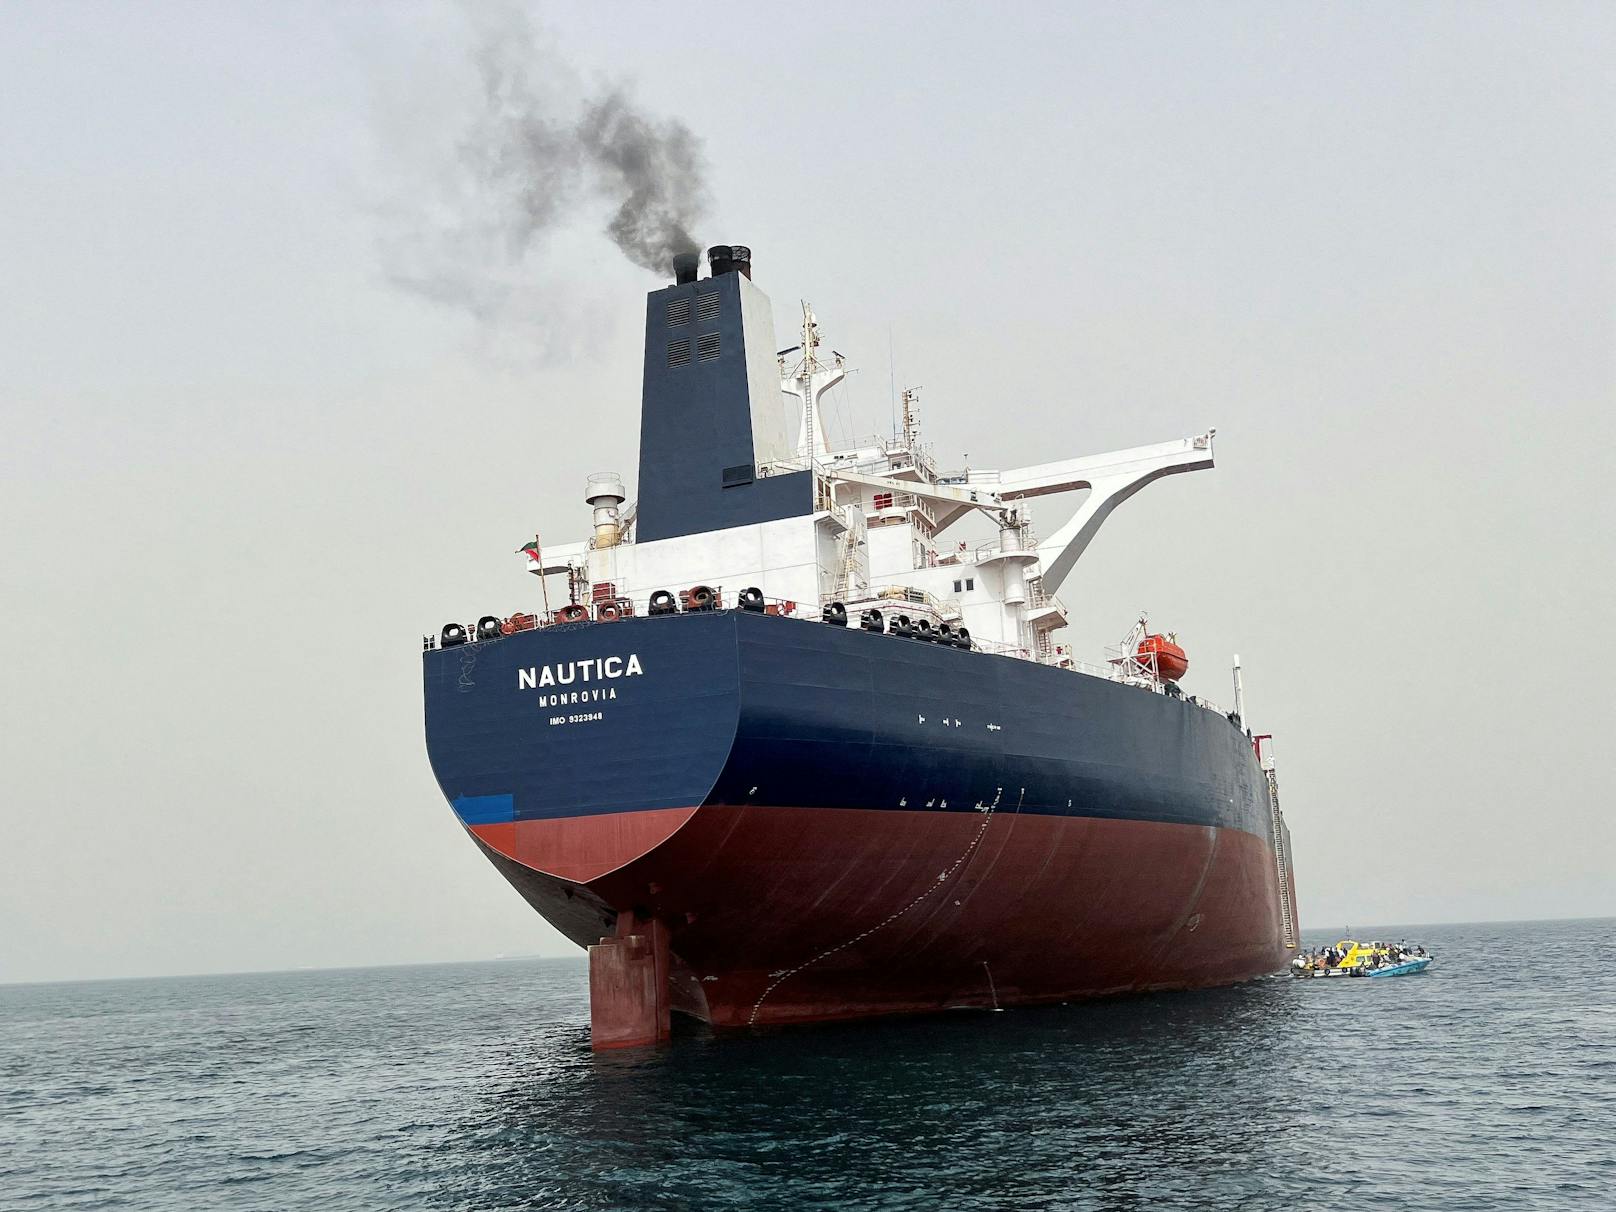 Die Nautica, ein Ersatzöltanker für den verfallenden "FSO Safer", im Hafen von Hodeidah (Jemen) am Roten Meer.